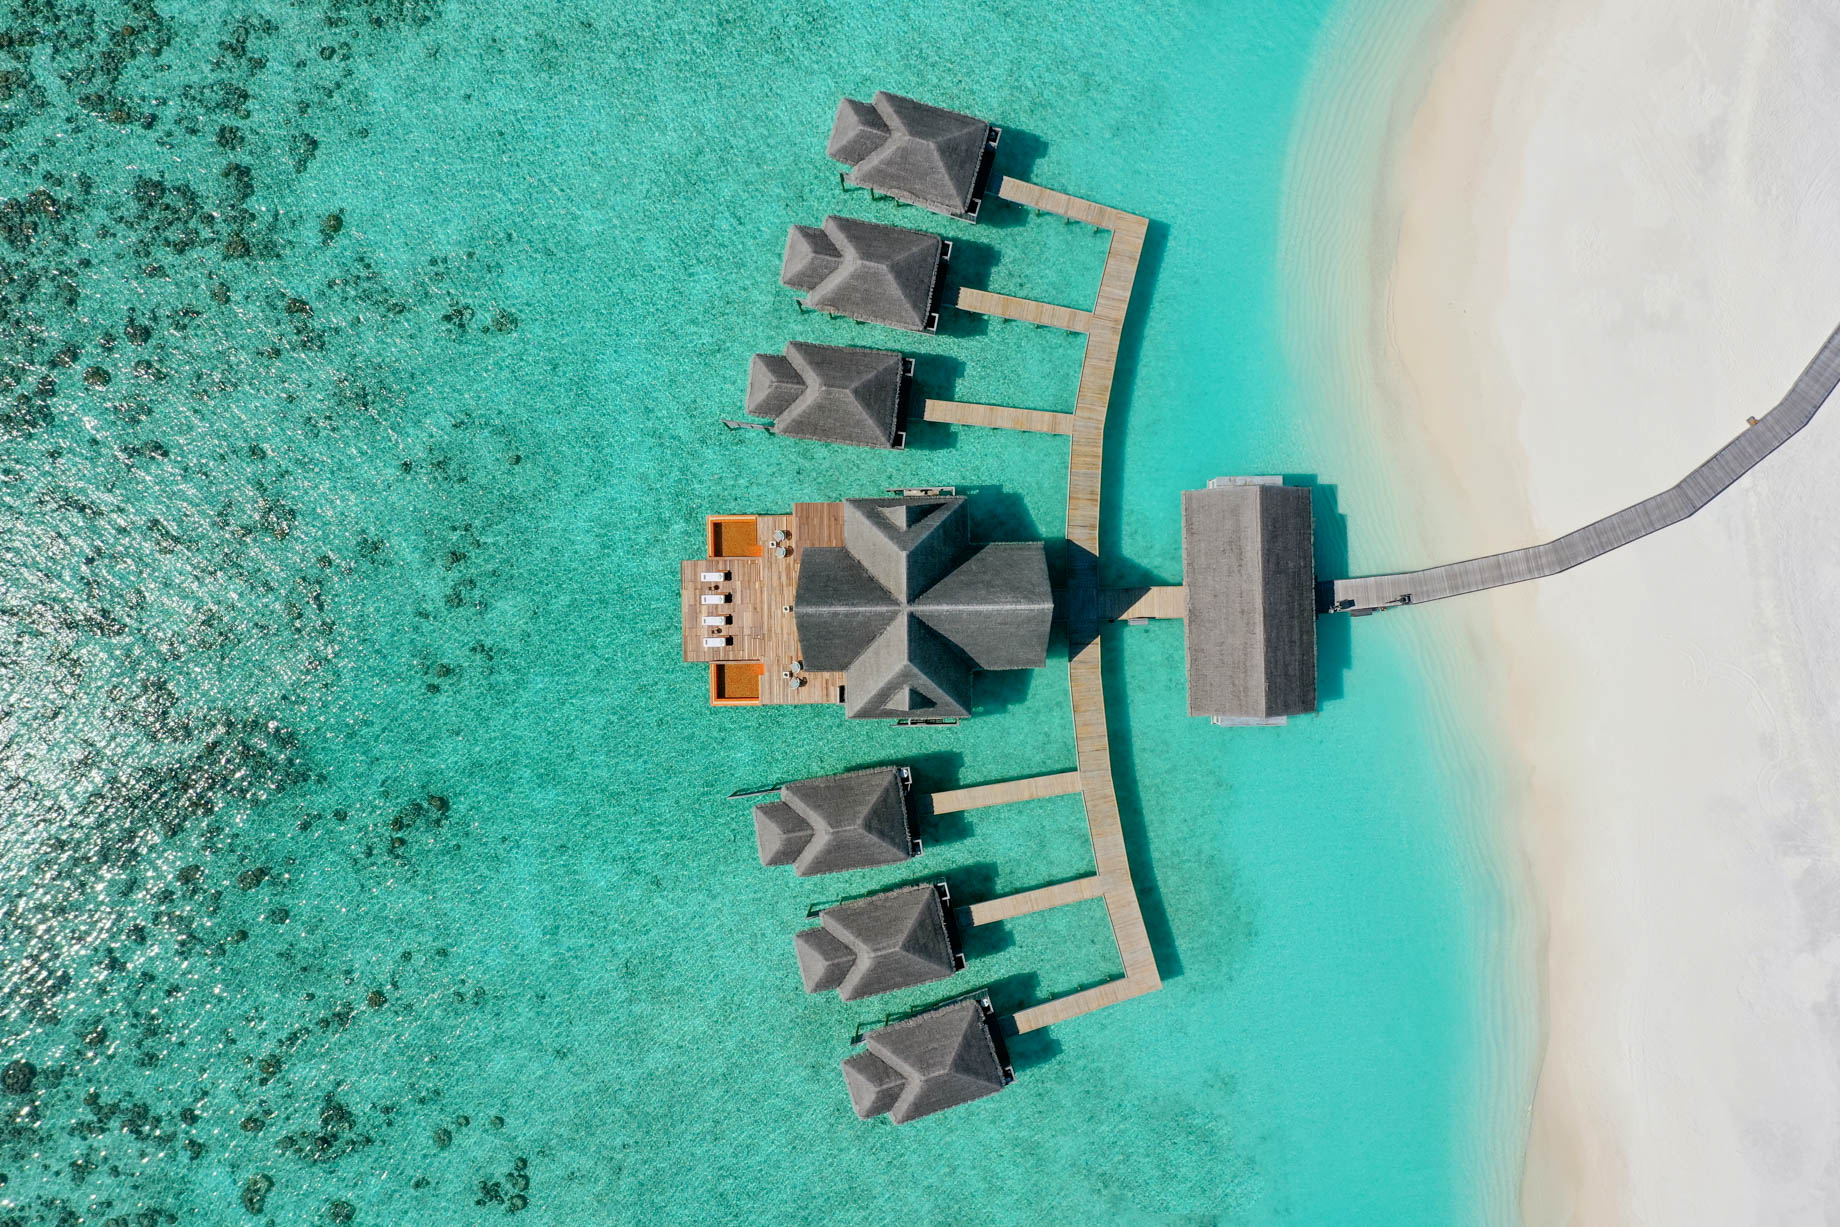 Anantara Kihavah Maldives Villas Resort – Baa Atoll, Maldives – Spa Overhead Aerial View